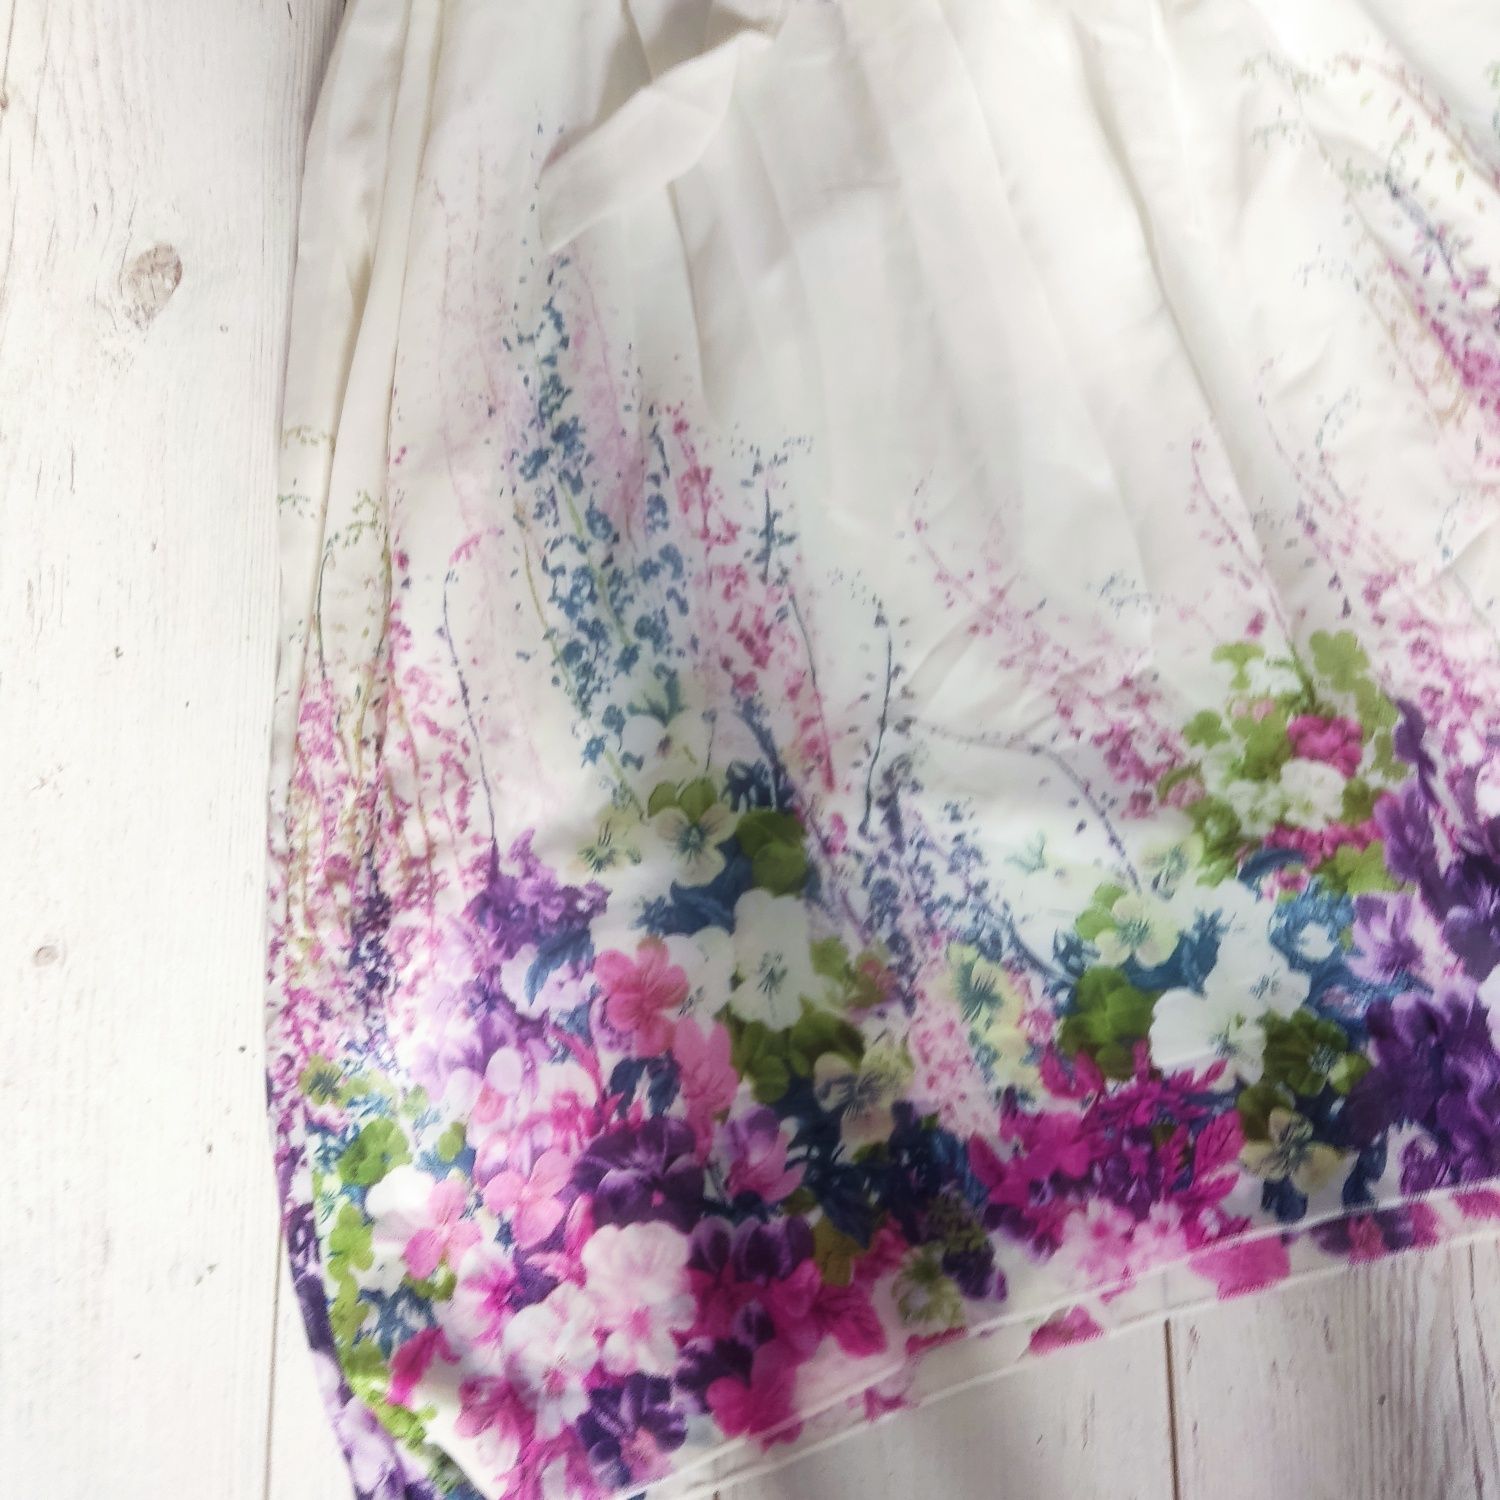 Sukienka kremowa maxi długa szyfonowa w kwiaty elegancka zwiewna  nowa